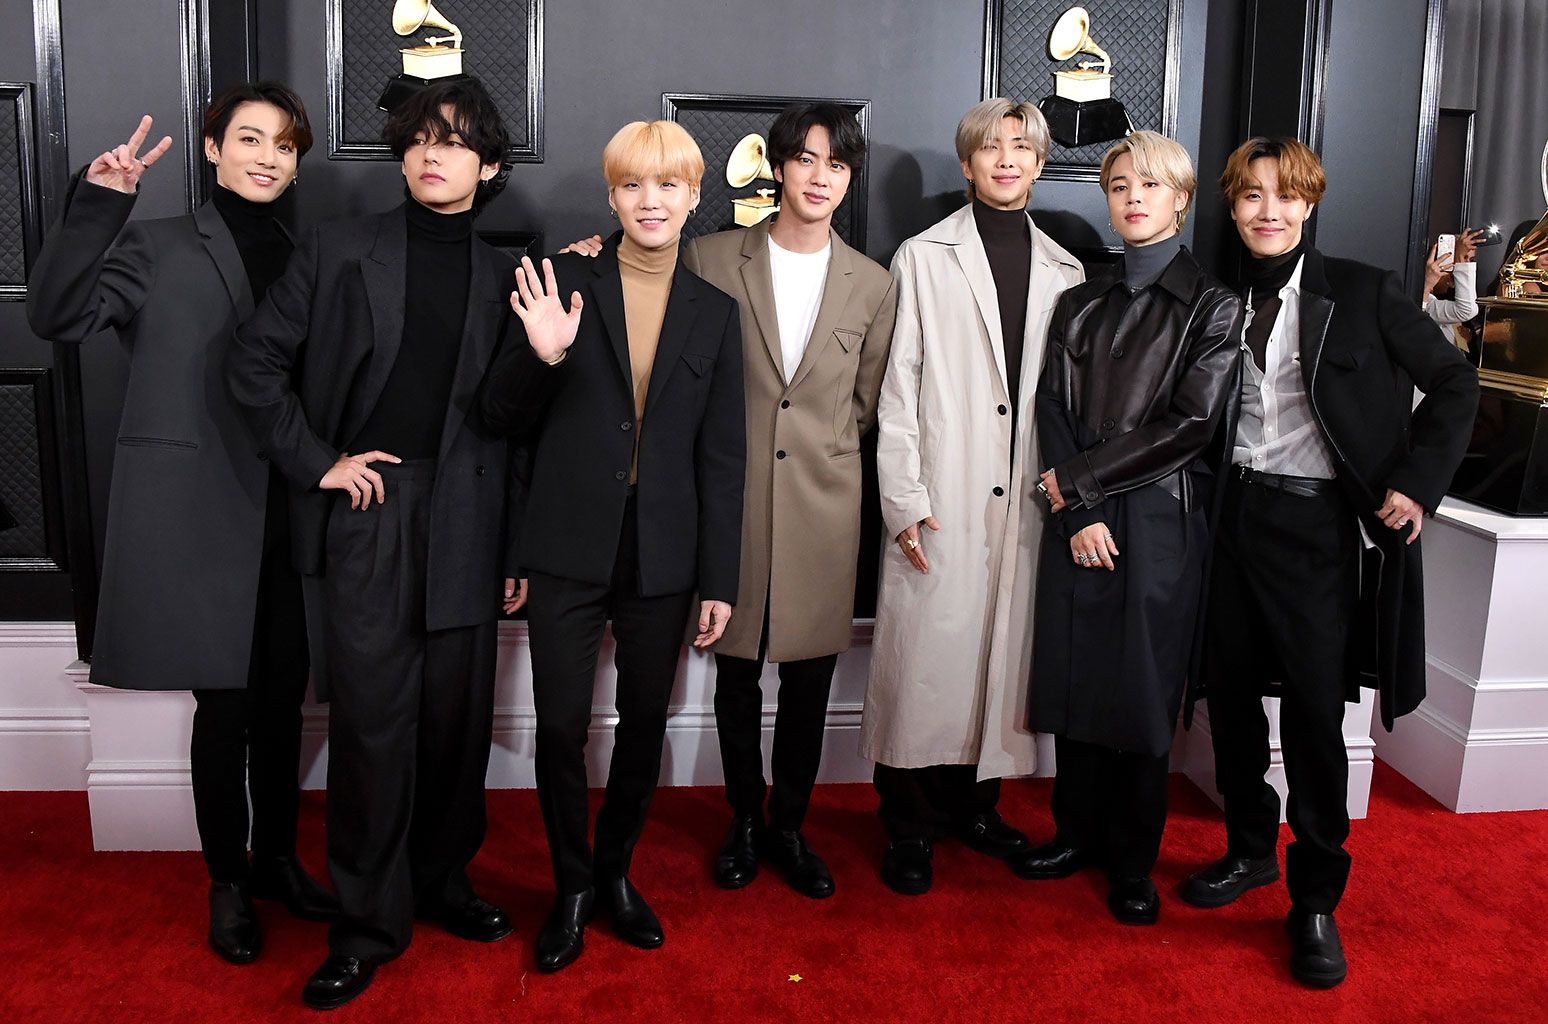 BTS's 2020 Grammy Red Carpet Interview: Watch